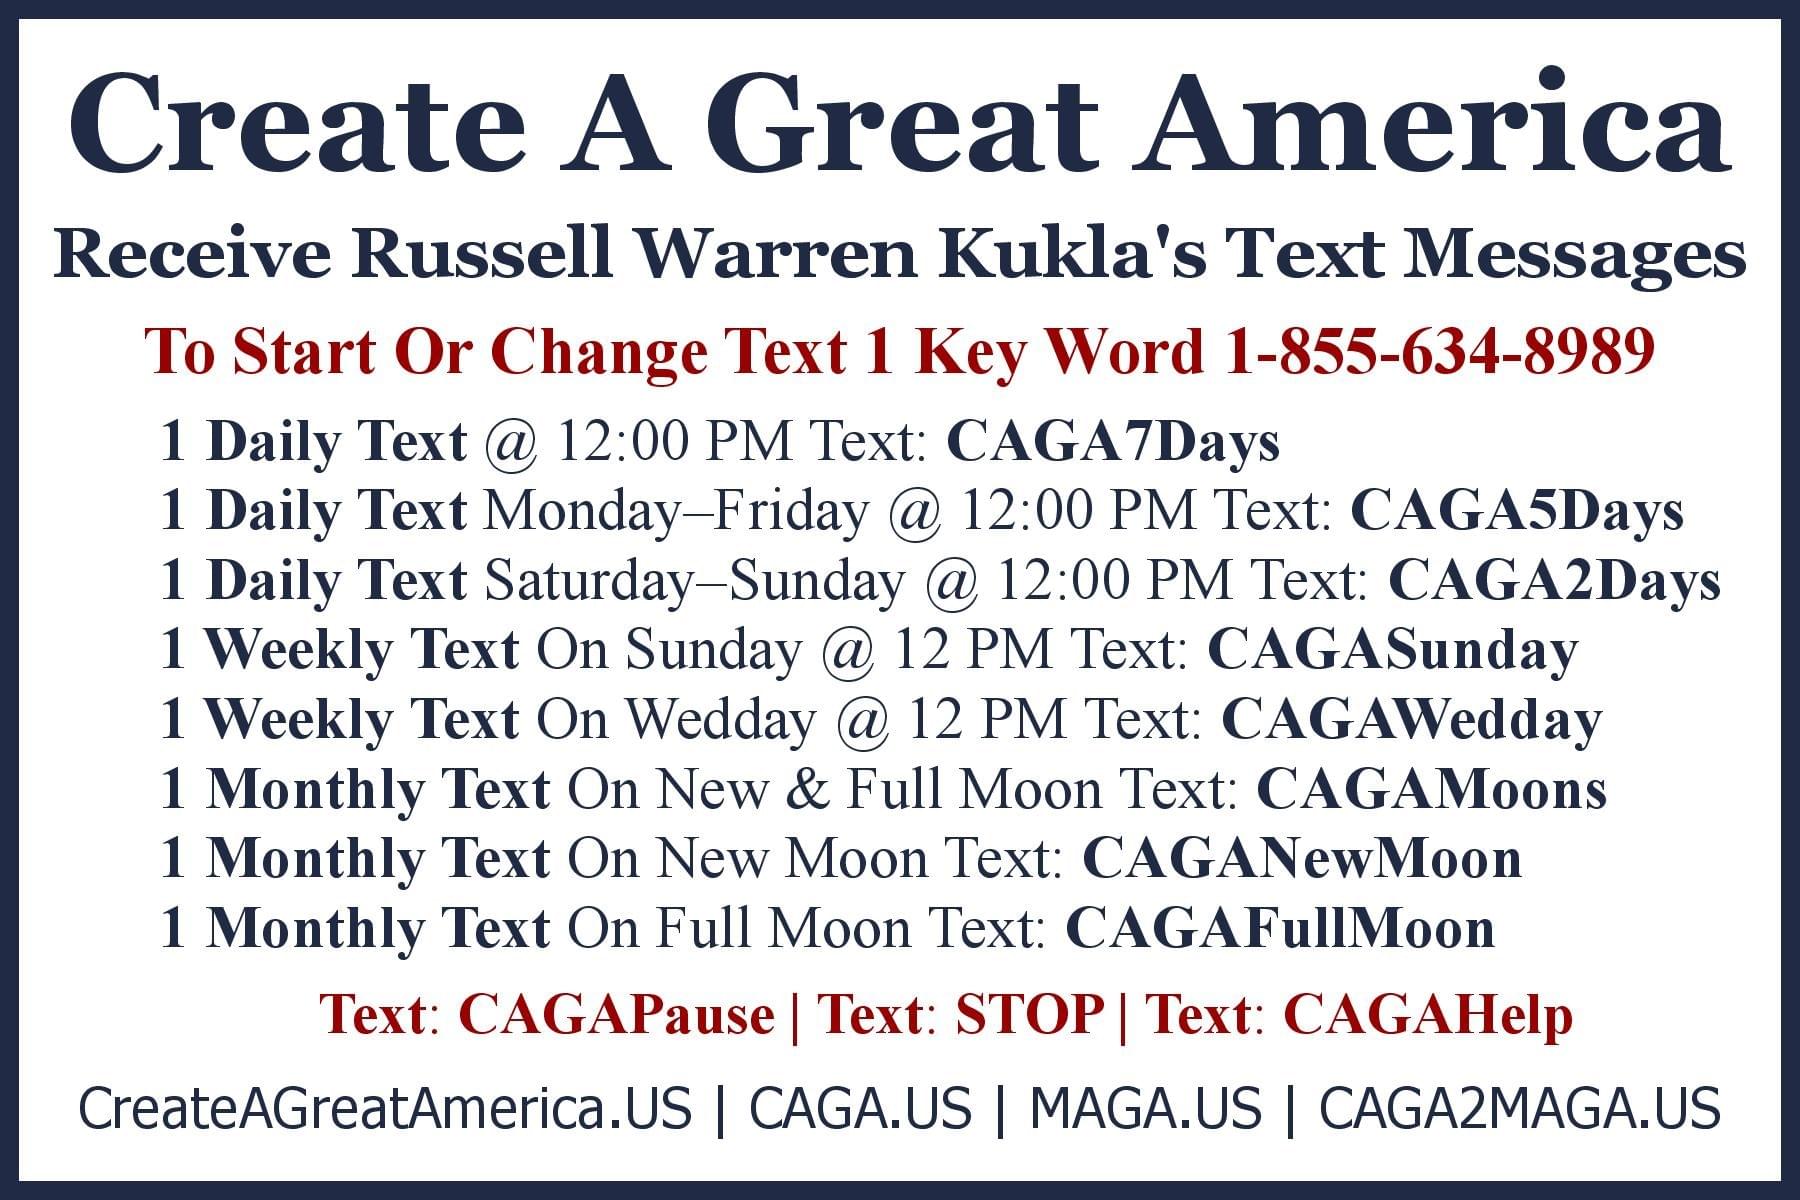 Create A Great America, Make A Great America, Make America Great Again, CAGA, MAGA, CAGA2MAGA.US, RWK2TLK.US, TLK2RWK.US